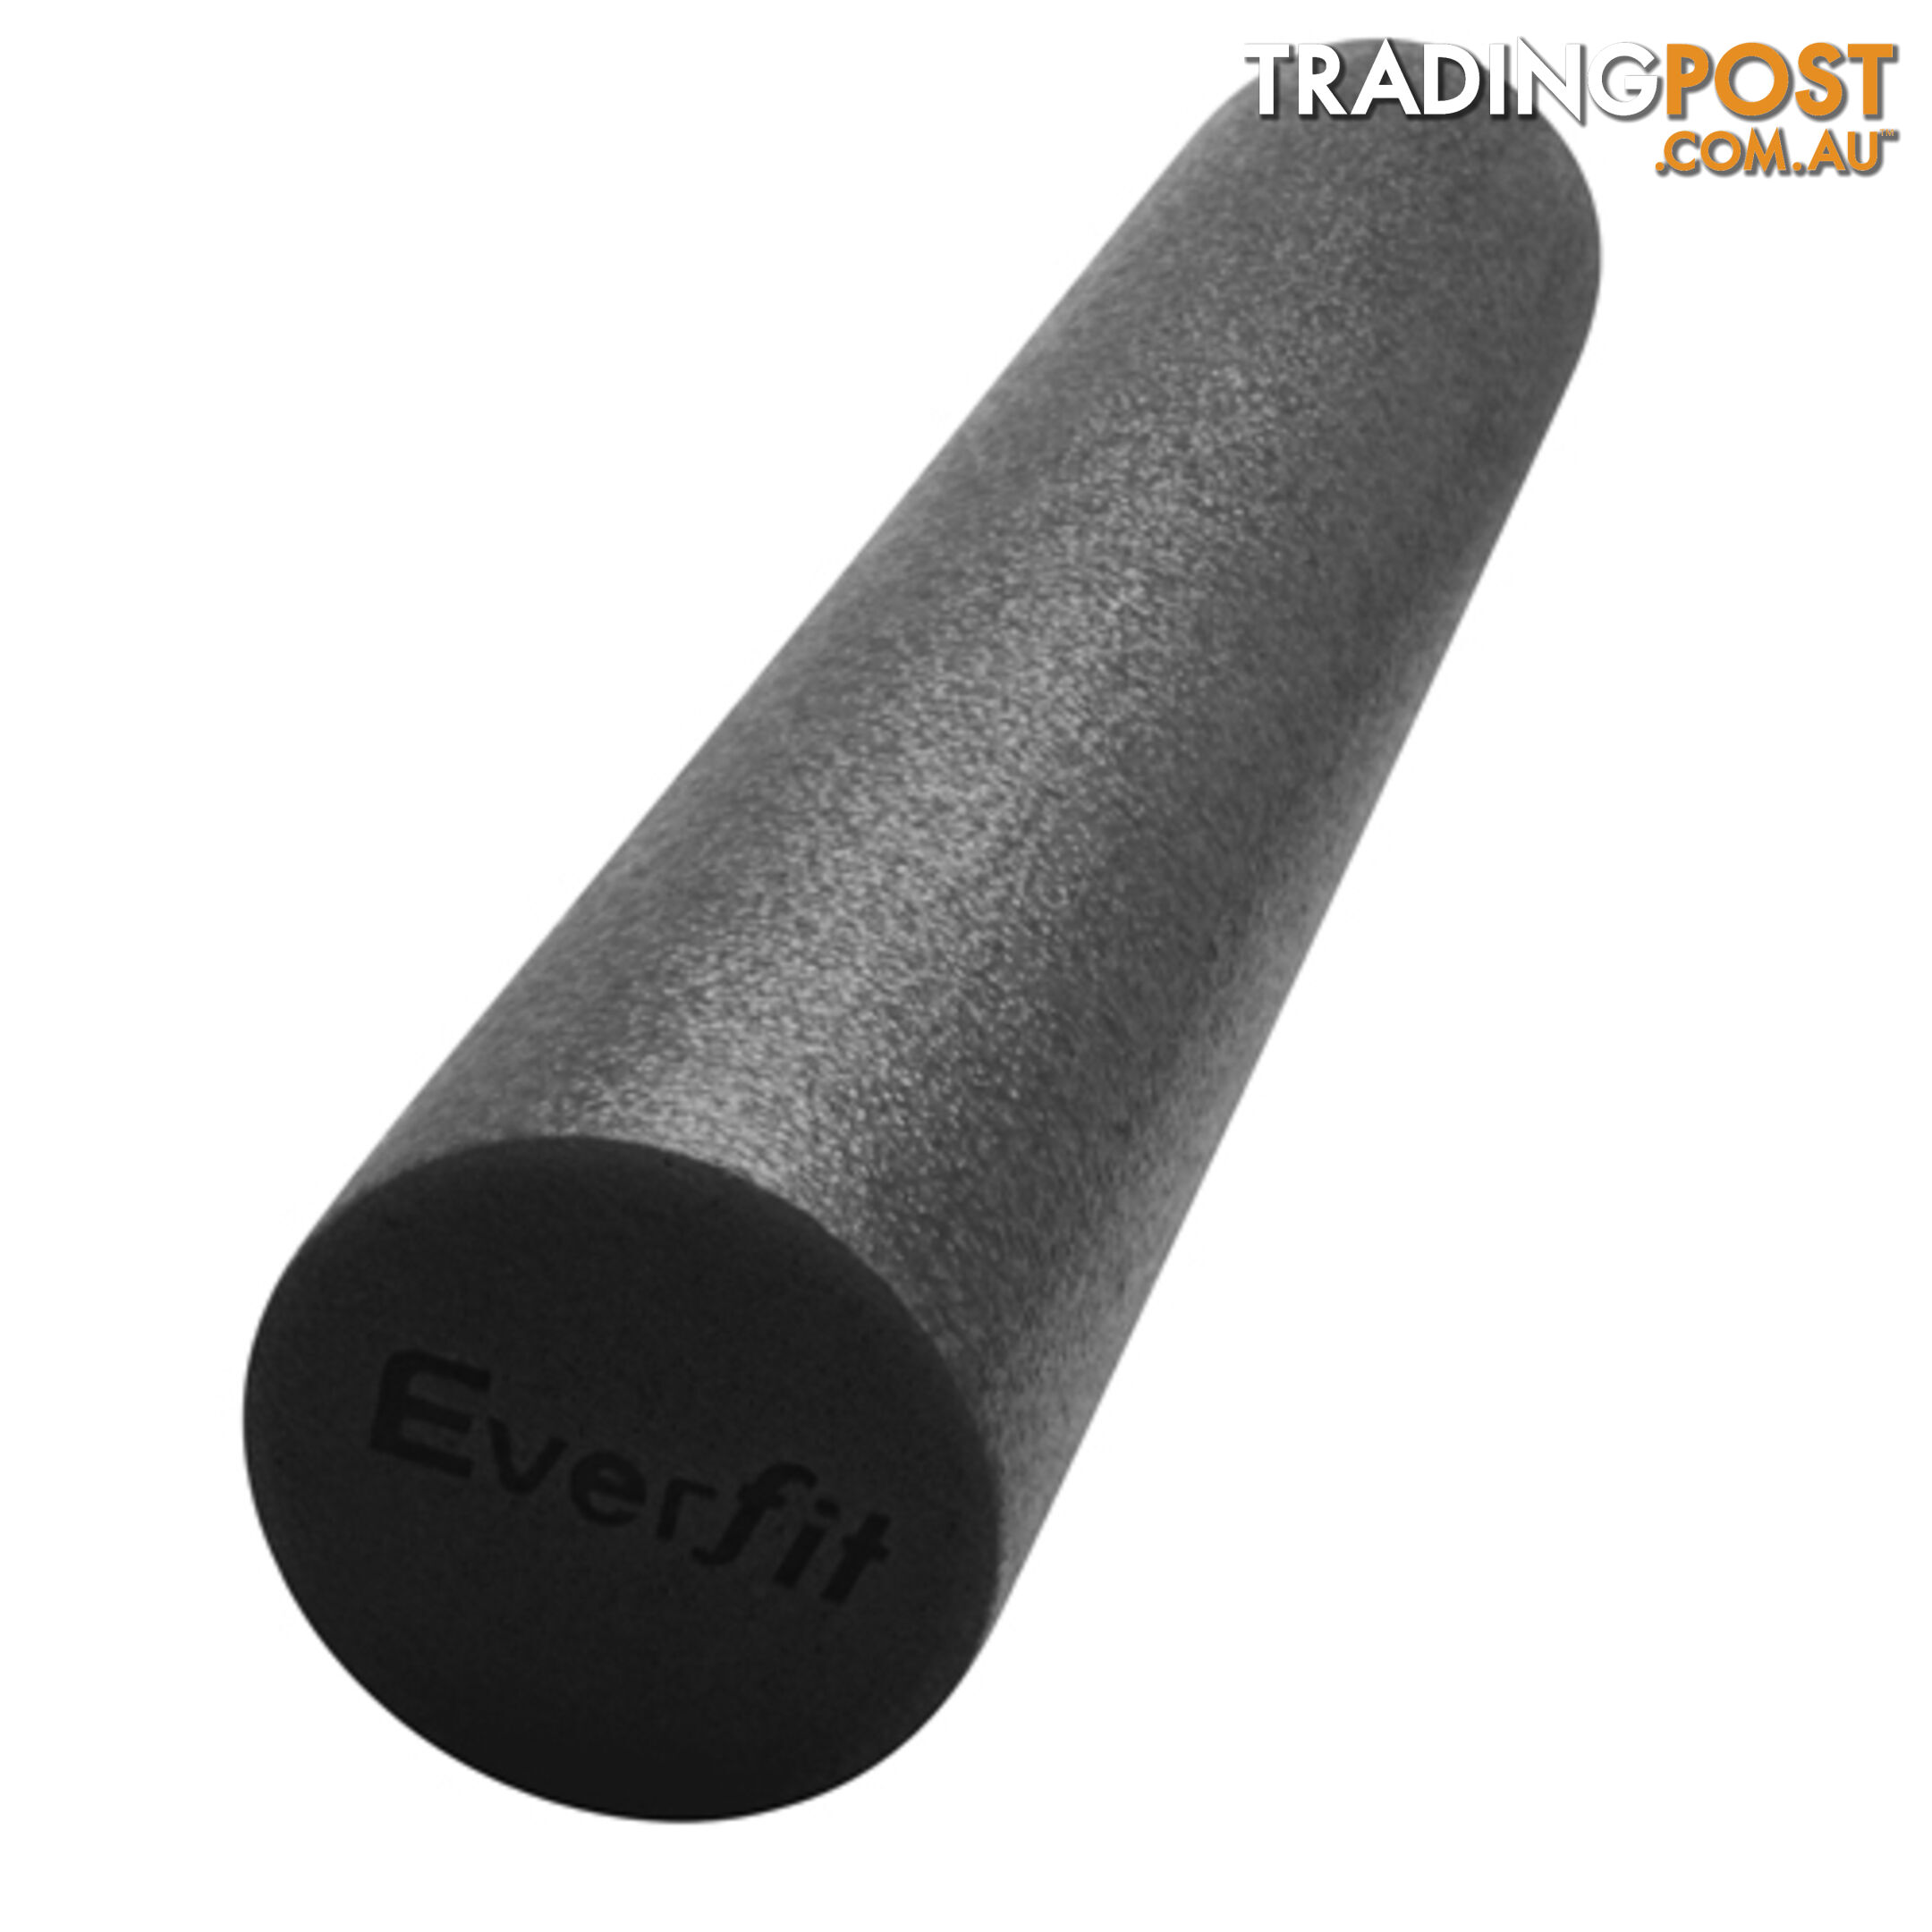 Yoga Gym Pilates EPE Physio Foam Roller Black 90 x 15cm